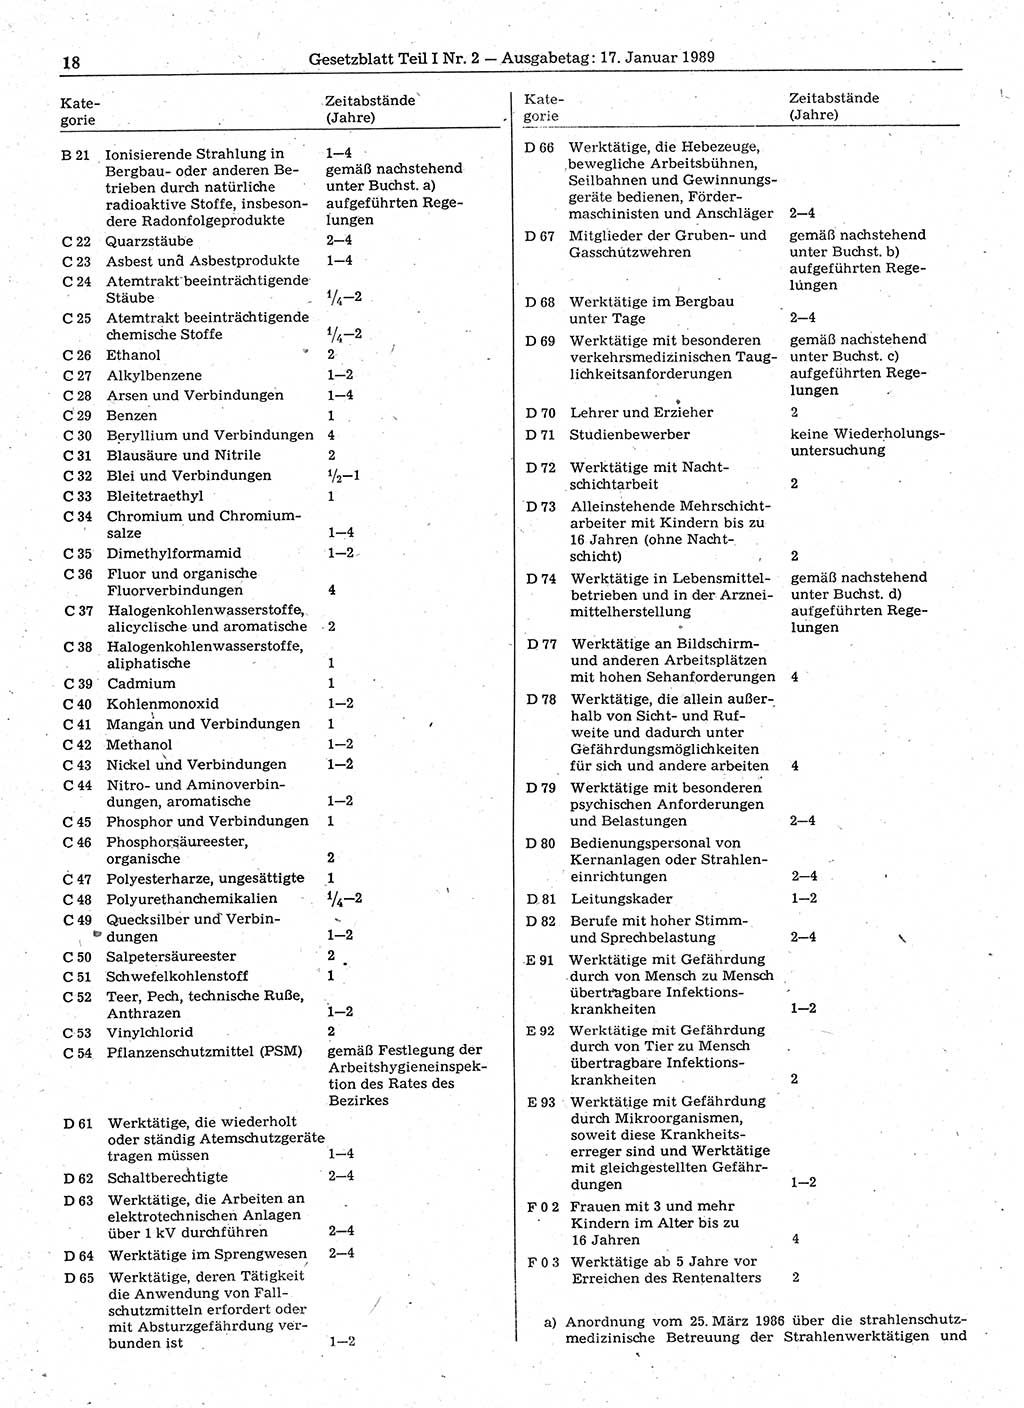 Gesetzblatt (GBl.) der Deutschen Demokratischen Republik (DDR) Teil Ⅰ 1989, Seite 18 (GBl. DDR Ⅰ 1989, S. 18)